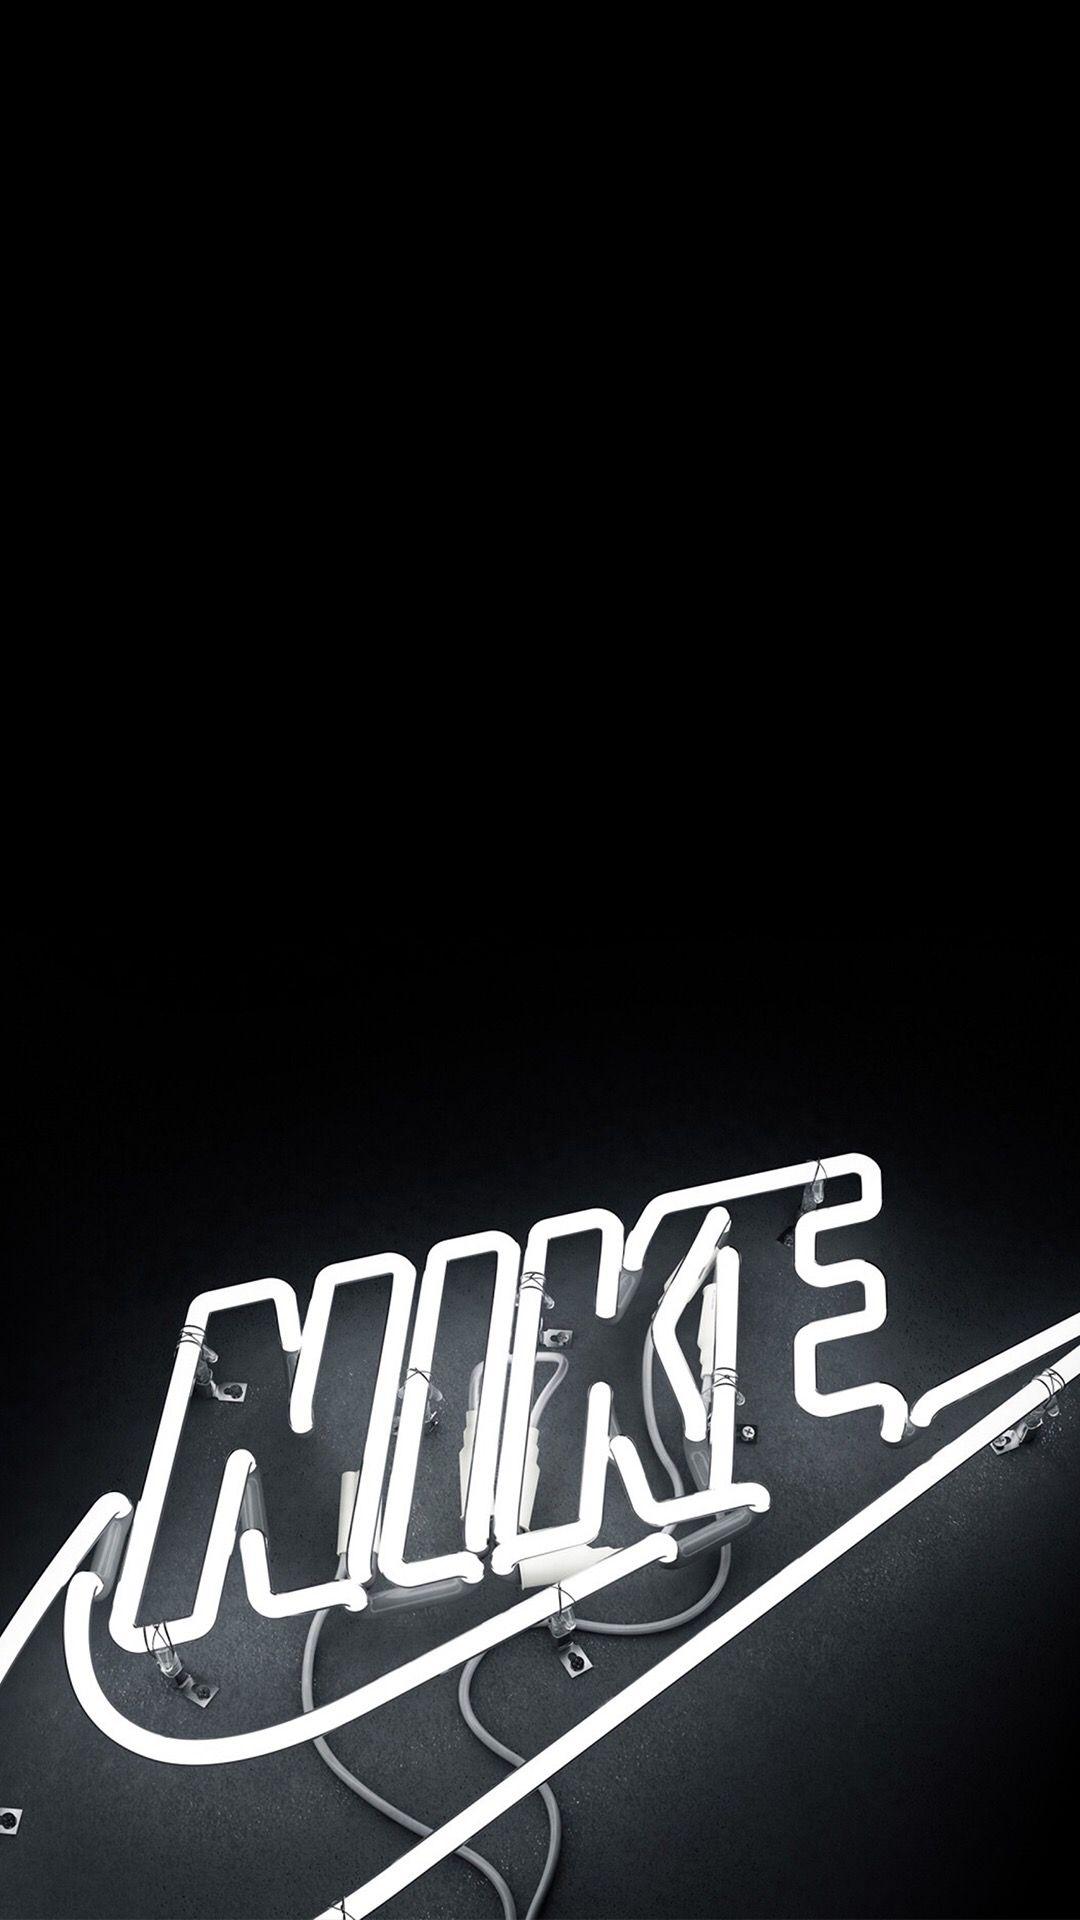 Aesthetic Black Wallpaper Nike gambar ke 7